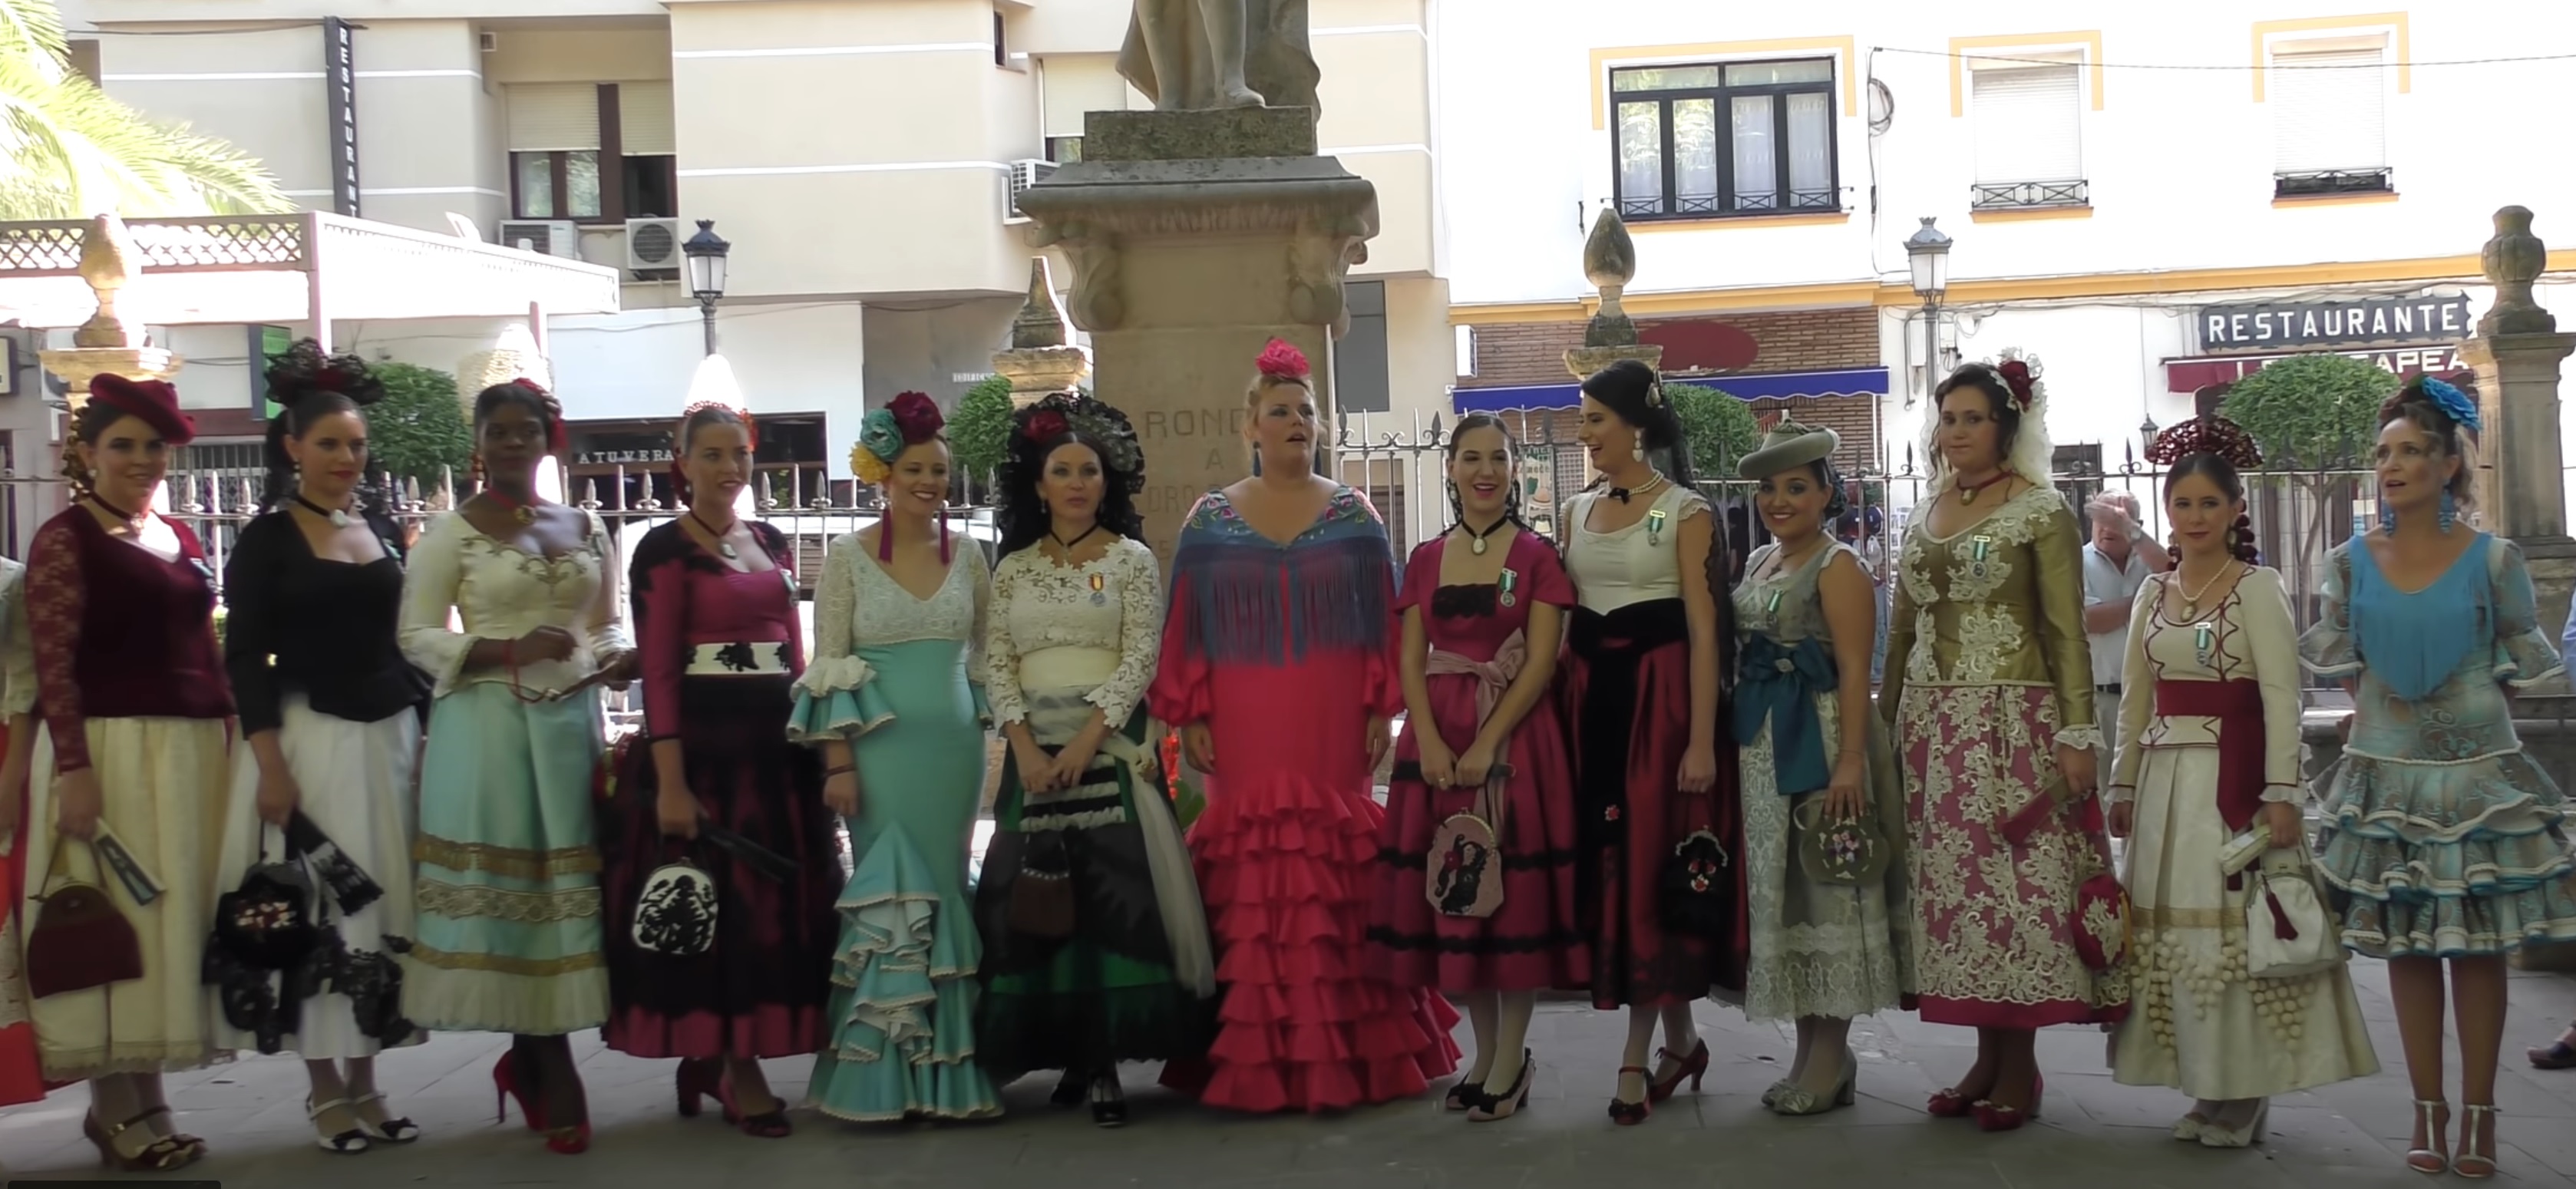 Feria Goyesca de Pedro Romero: Het Prachtige Festival van Ronda ter Ere van Traditie en Stierengevechten